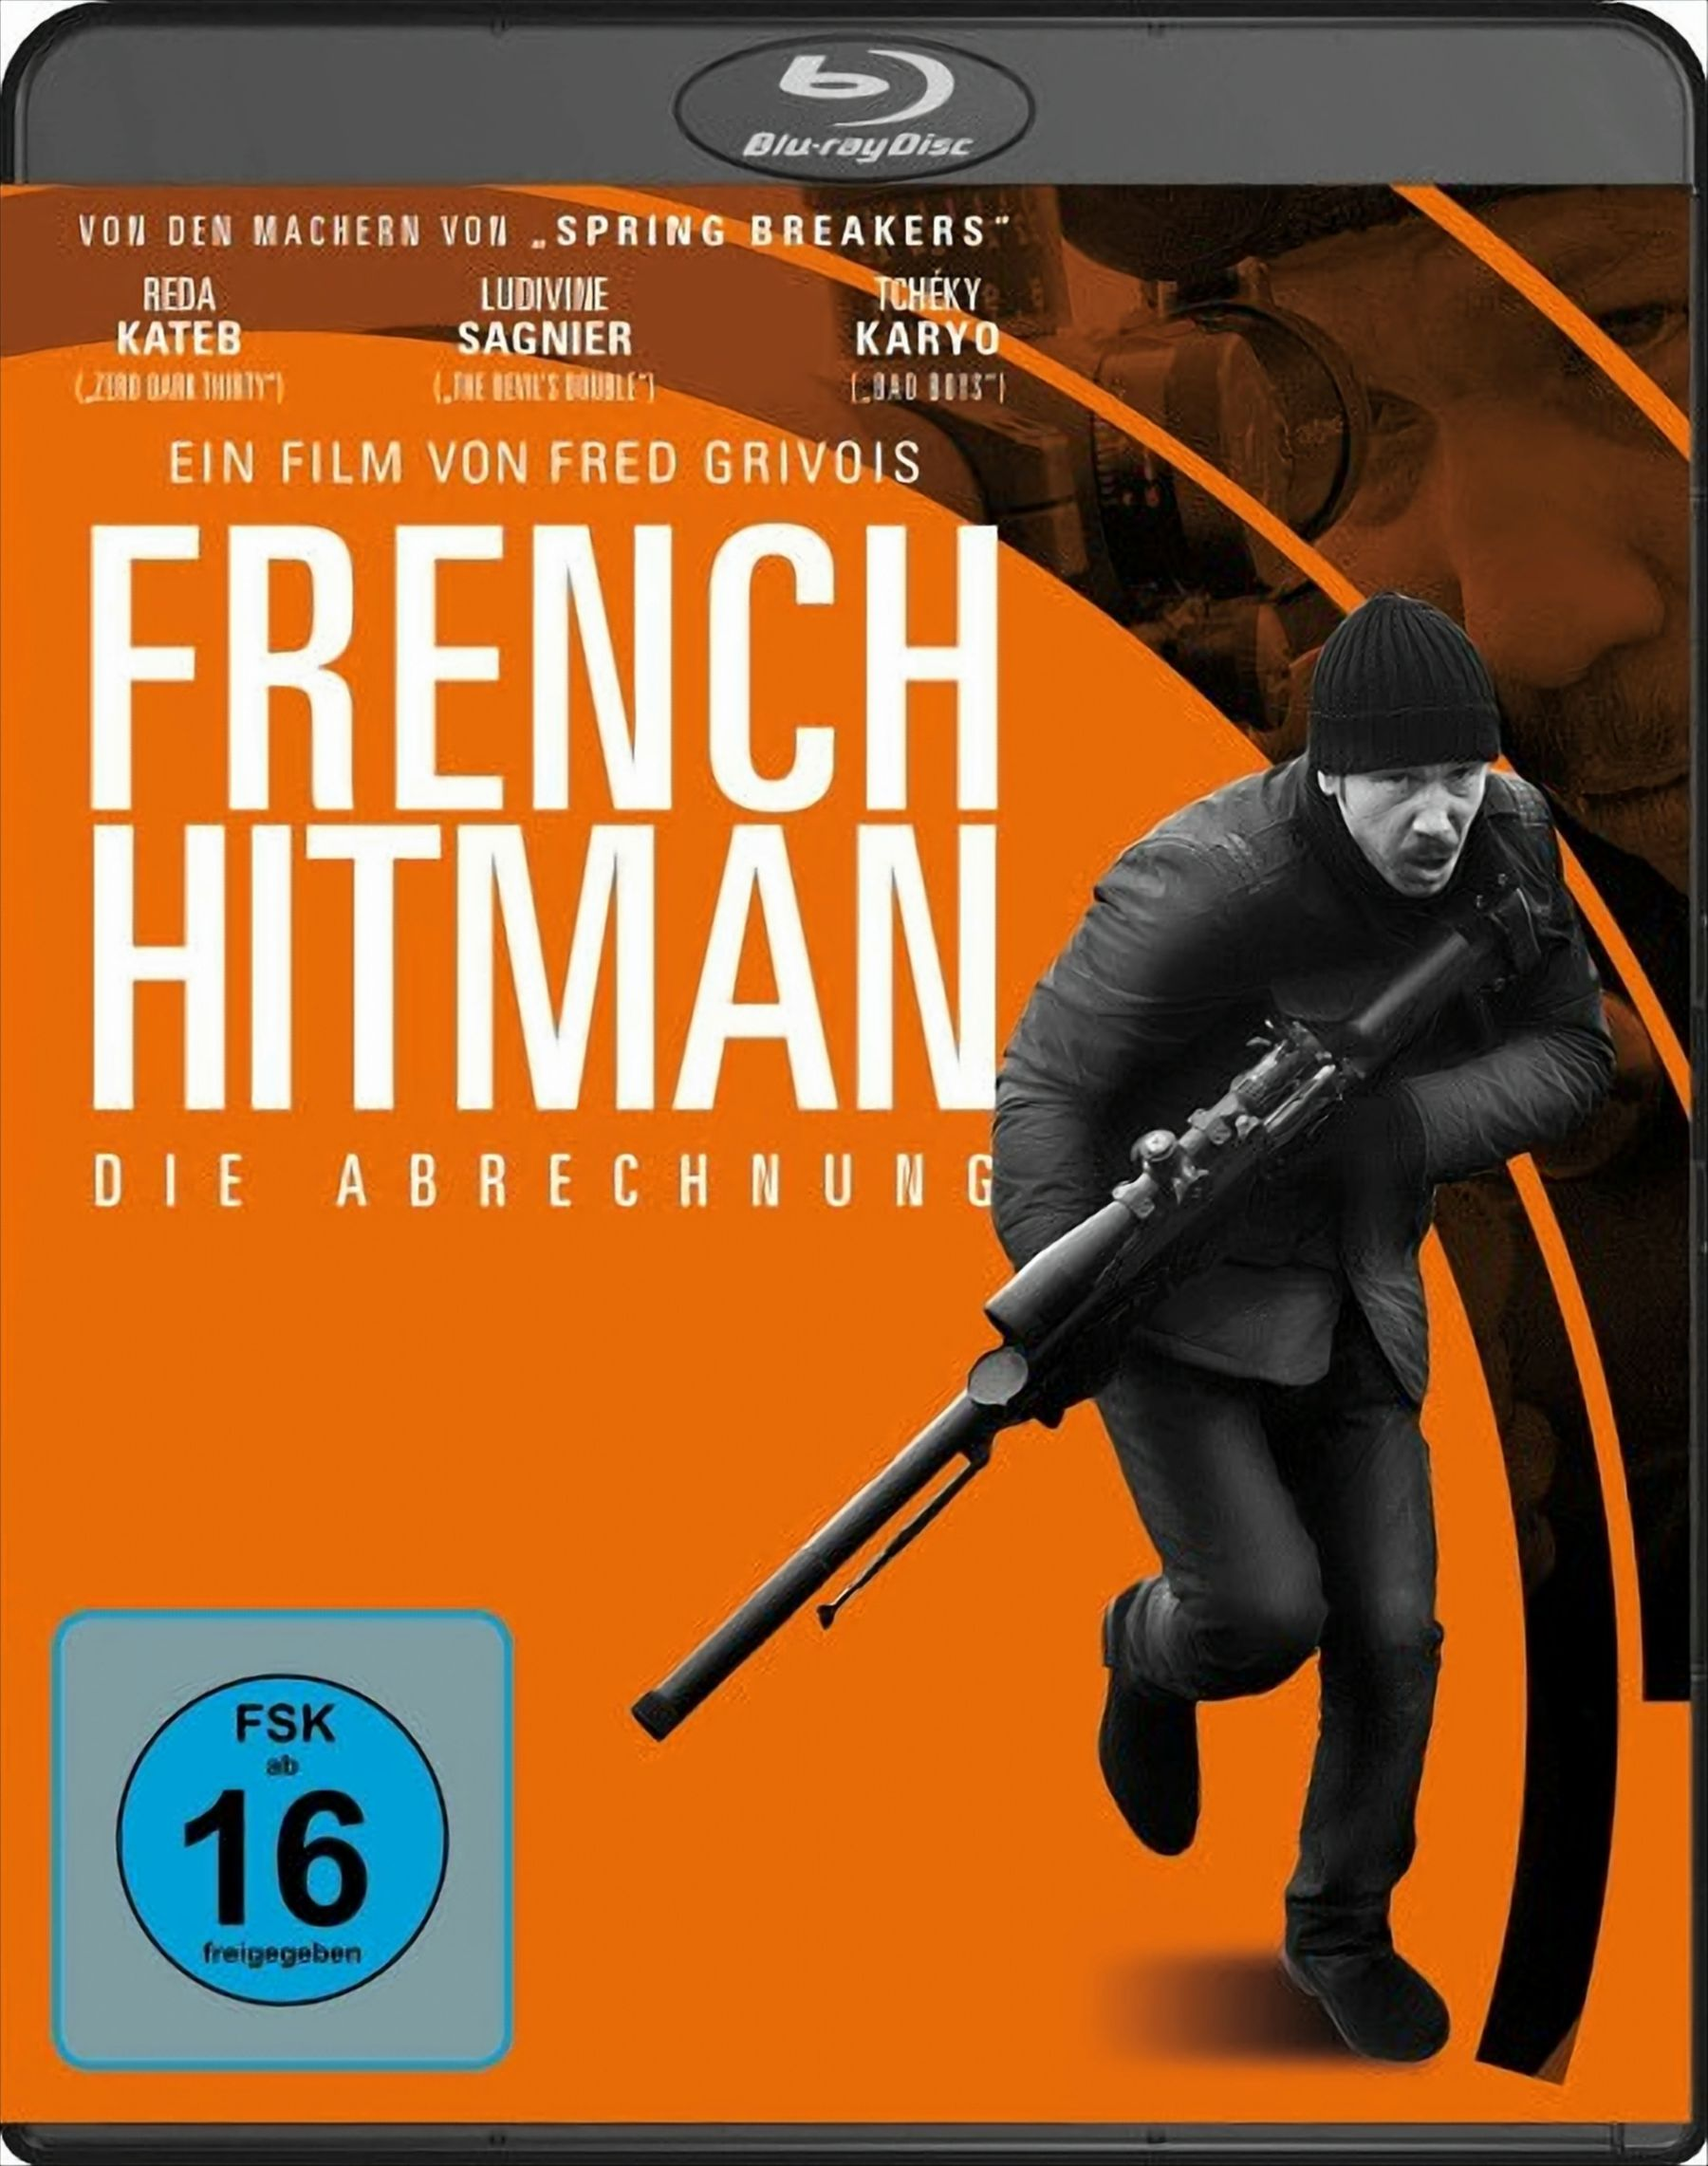 French Hitman - Die Abrechnung (Blu-ray) Blu-ray